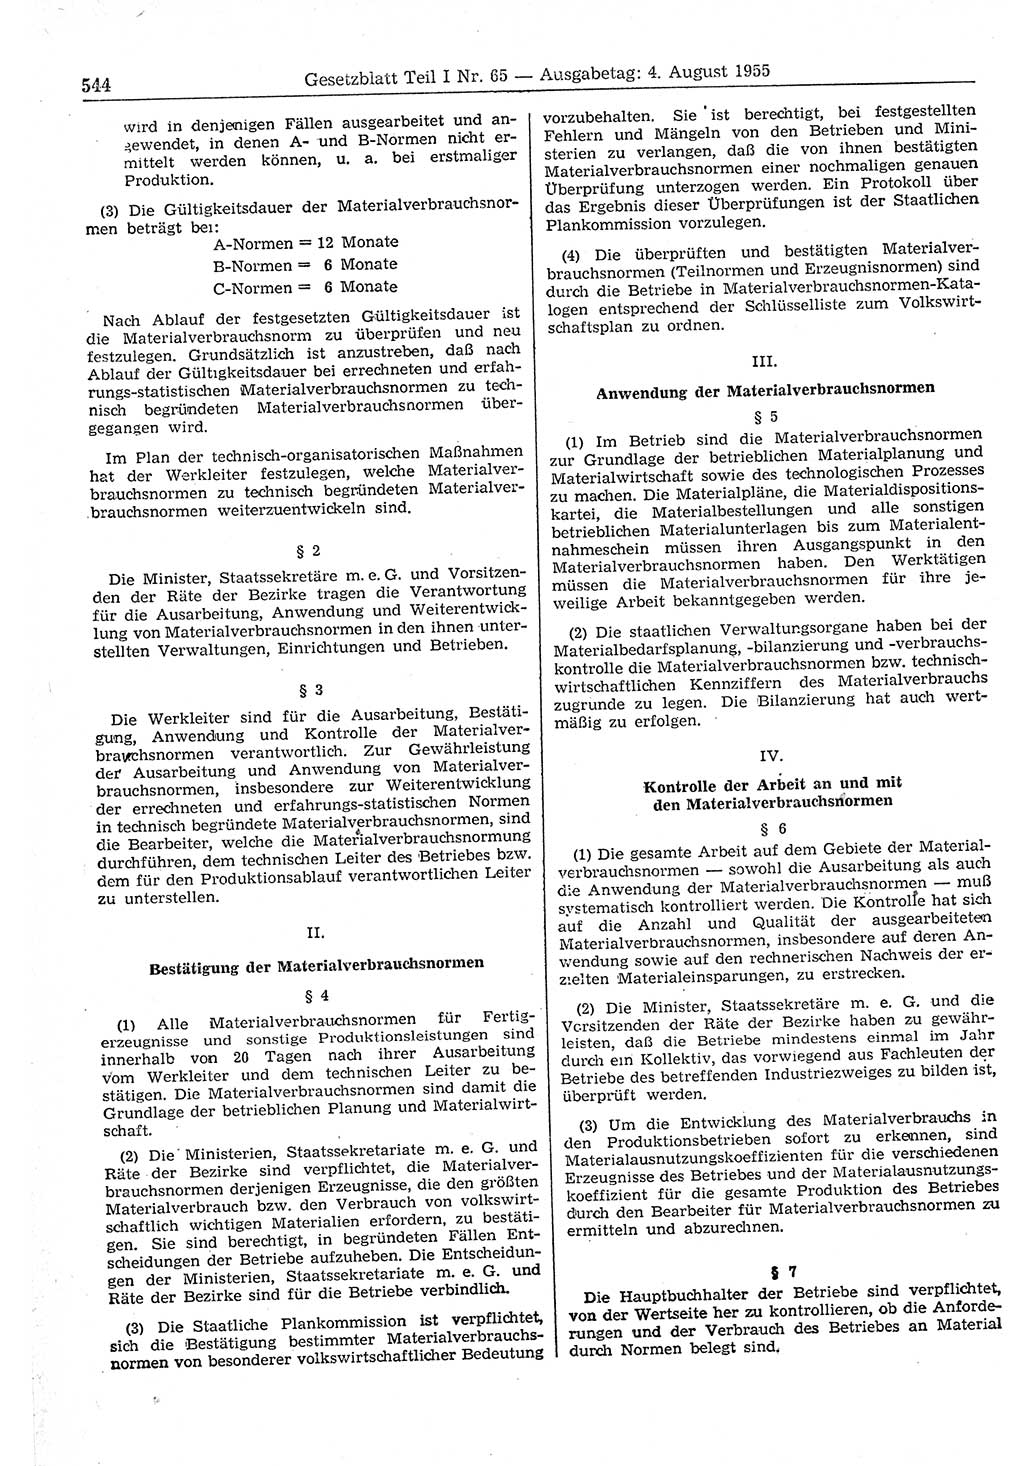 Gesetzblatt (GBl.) der Deutschen Demokratischen Republik (DDR) Teil Ⅰ 1955, Seite 544 (GBl. DDR Ⅰ 1955, S. 544)